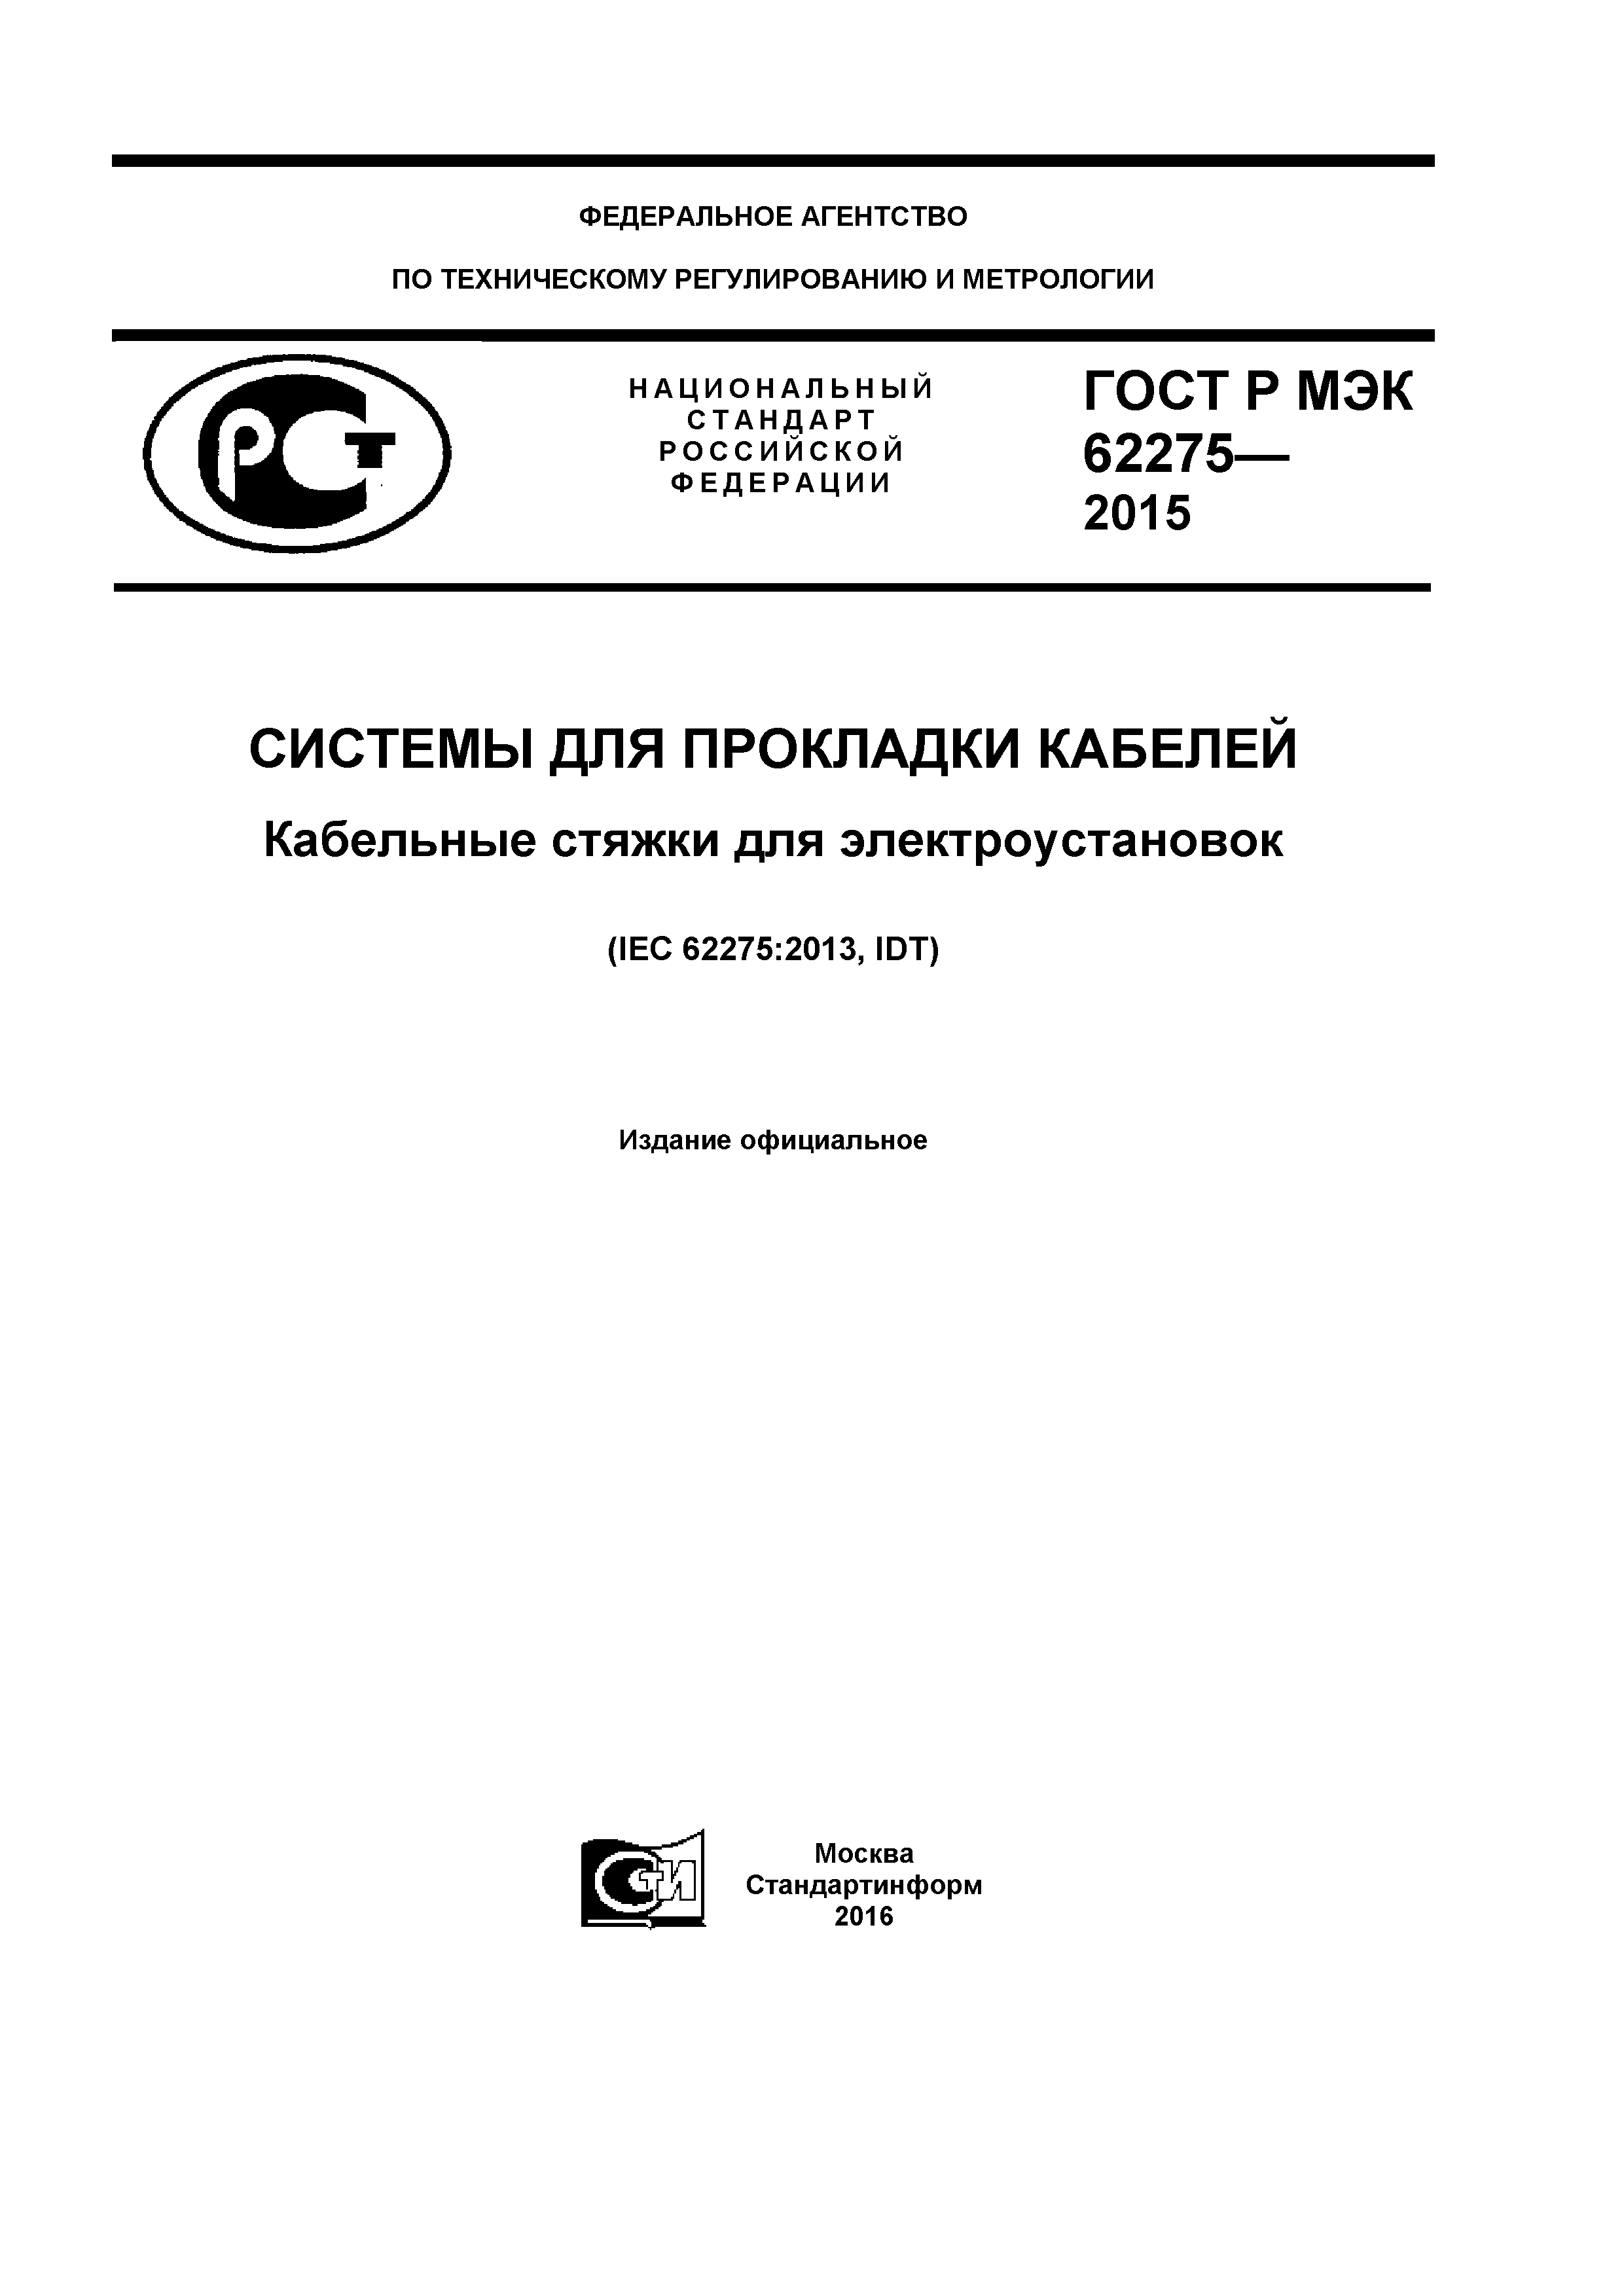 ГОСТ Р МЭК 62275-2015